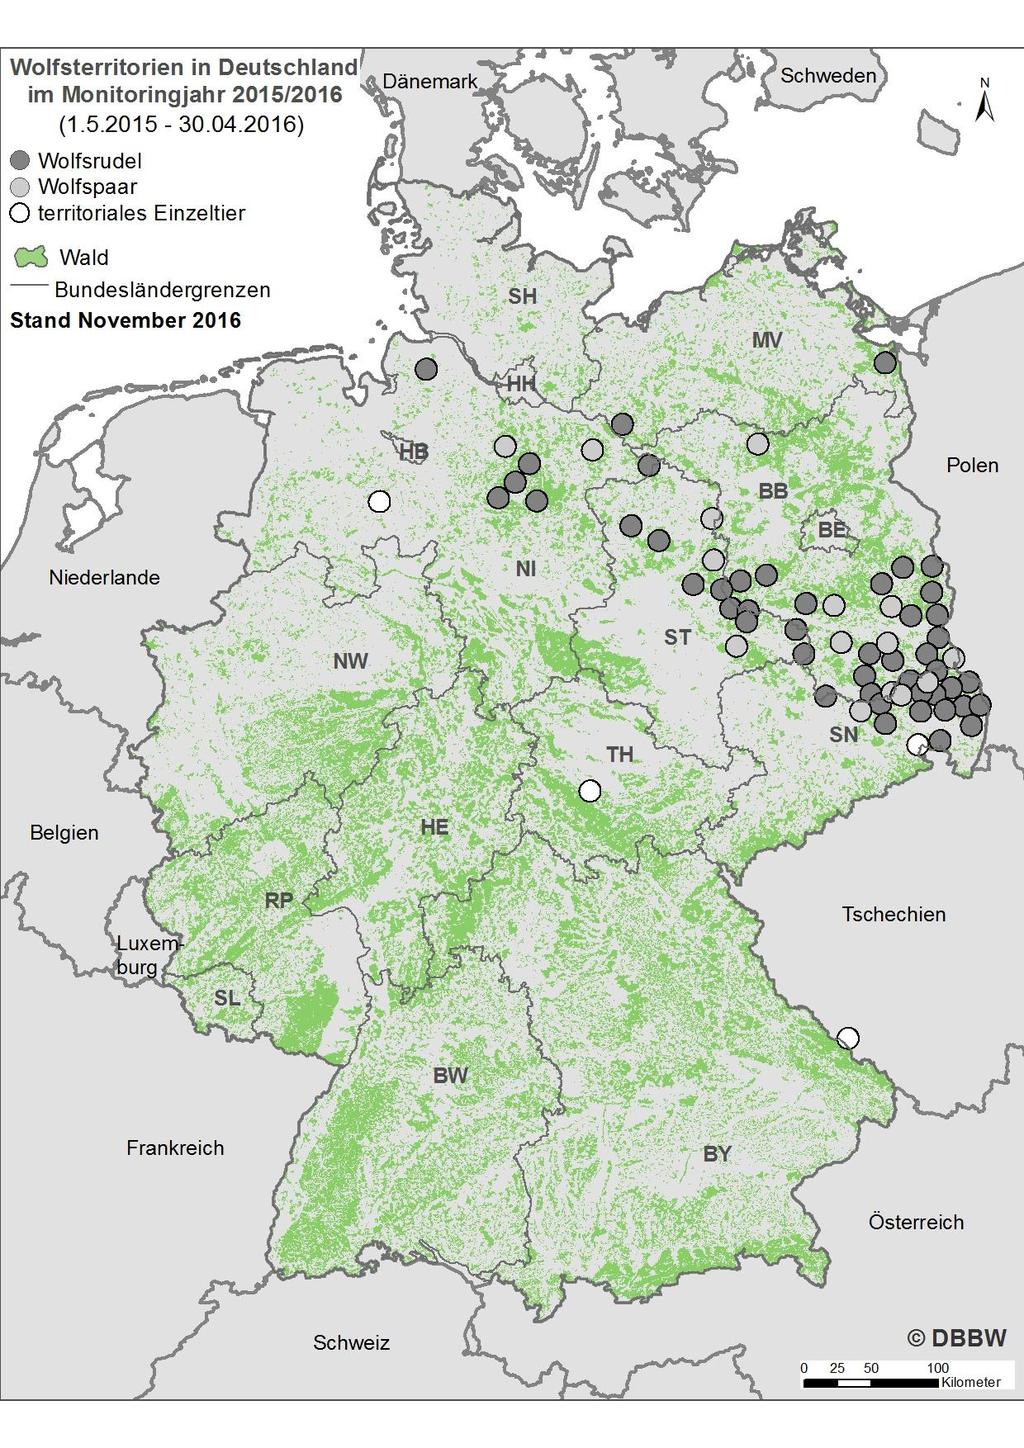 Abb. 1: Bestätigte Wolfsterritorien in Deutschland im Monitoringjahr 2015/2016.